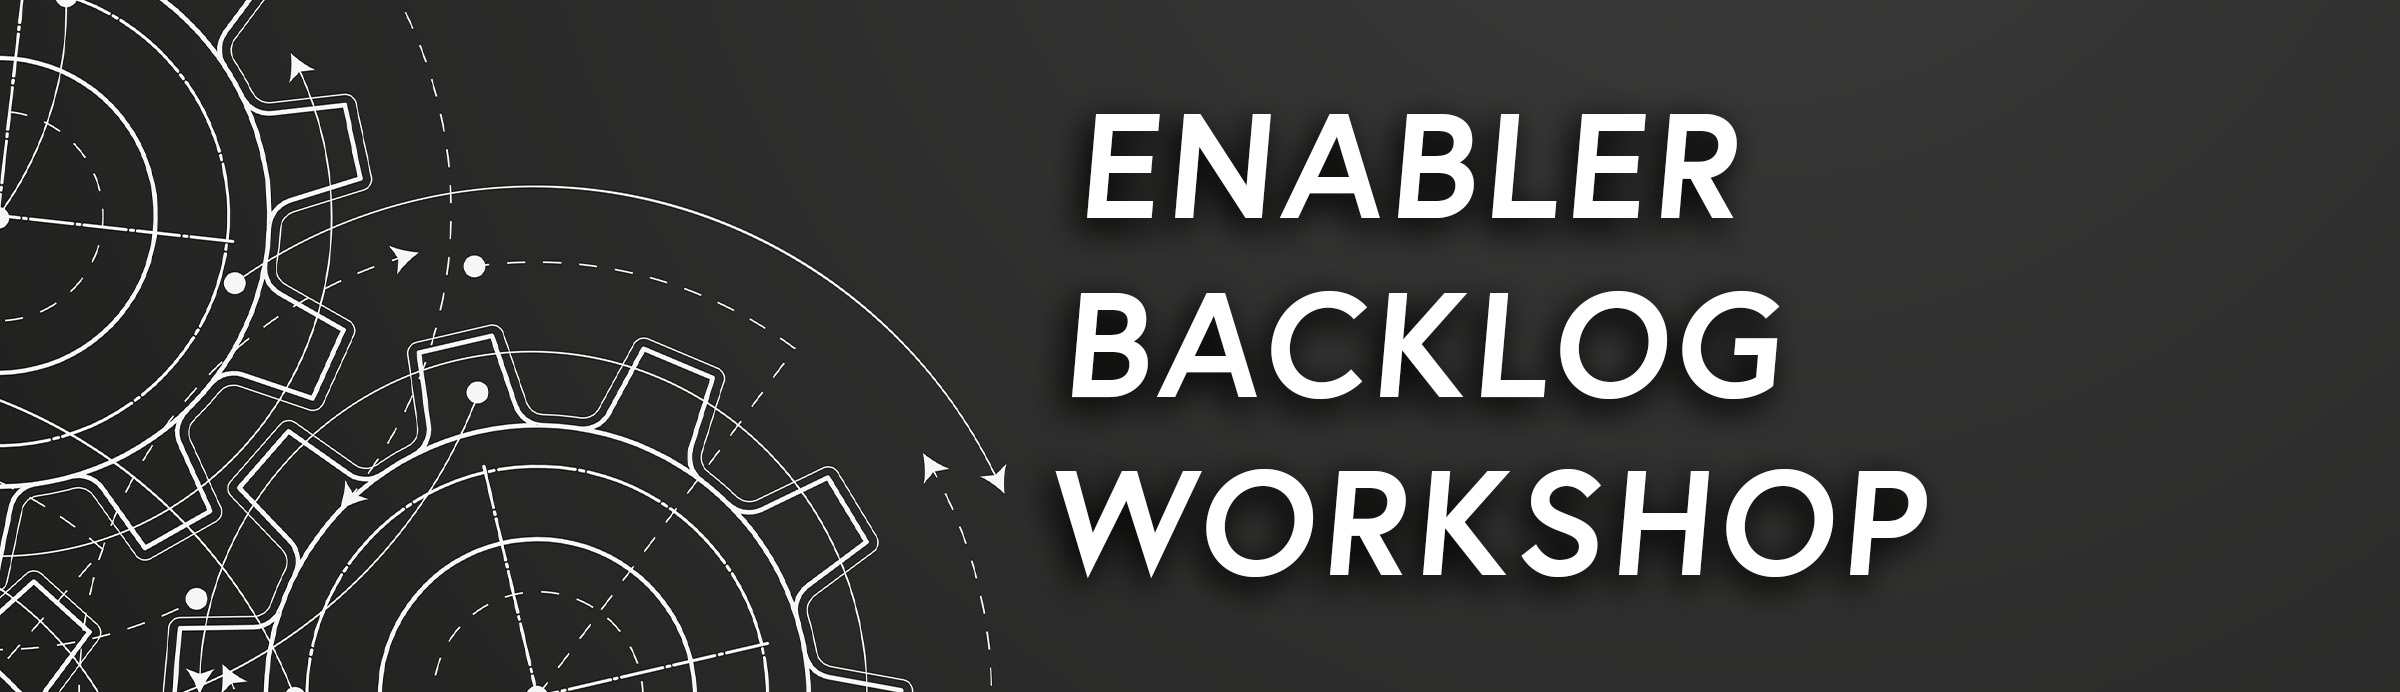 Der Enabler Backlog Workshop